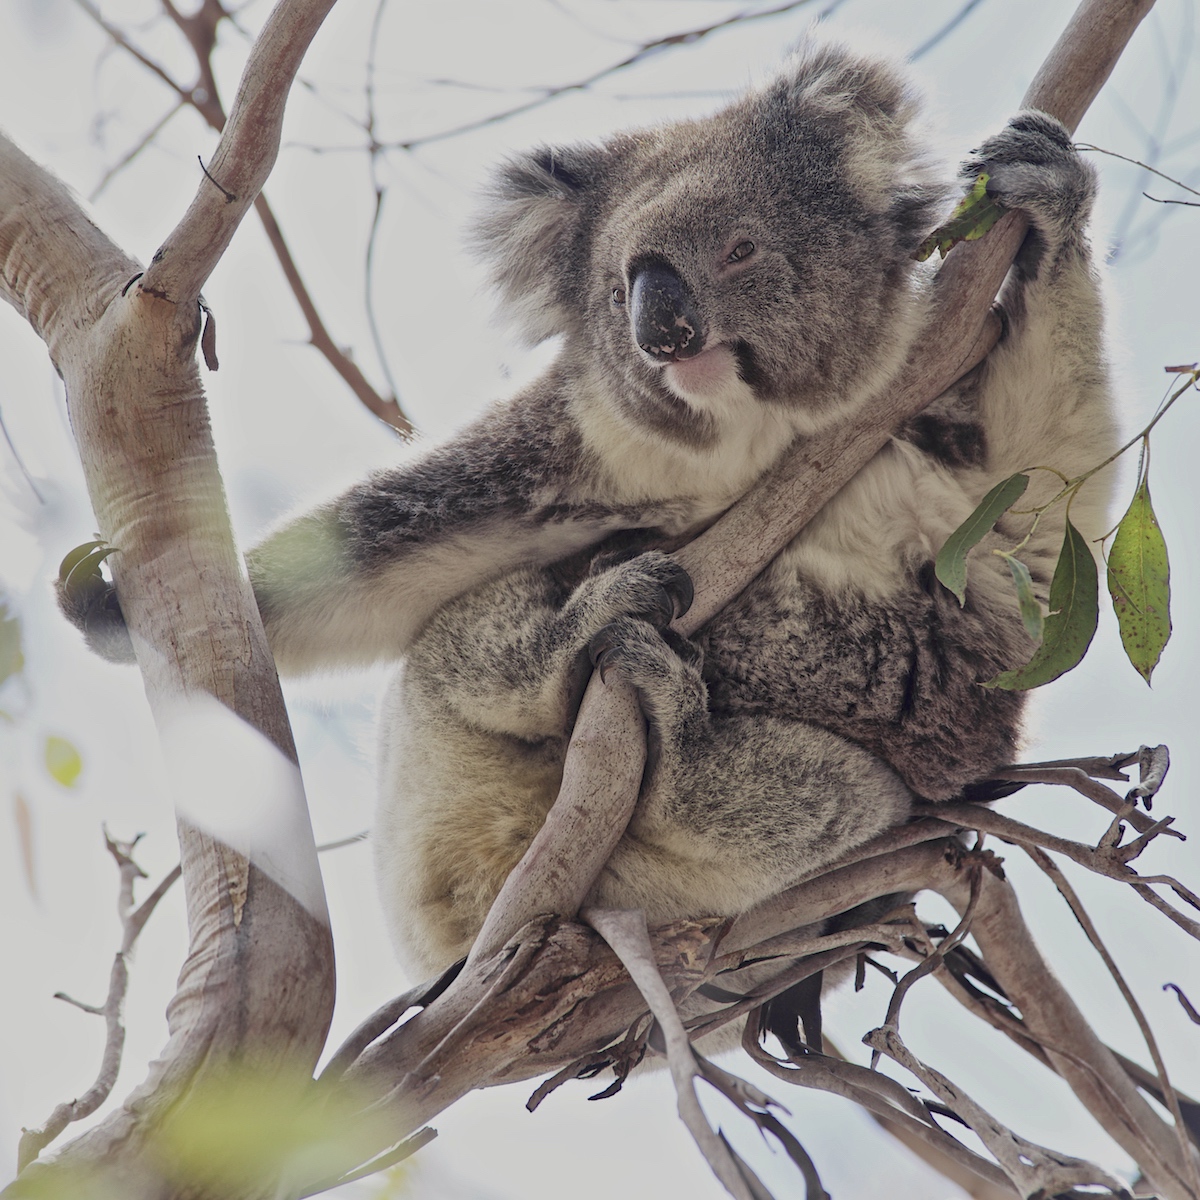 A Koala of Kangaroo Island